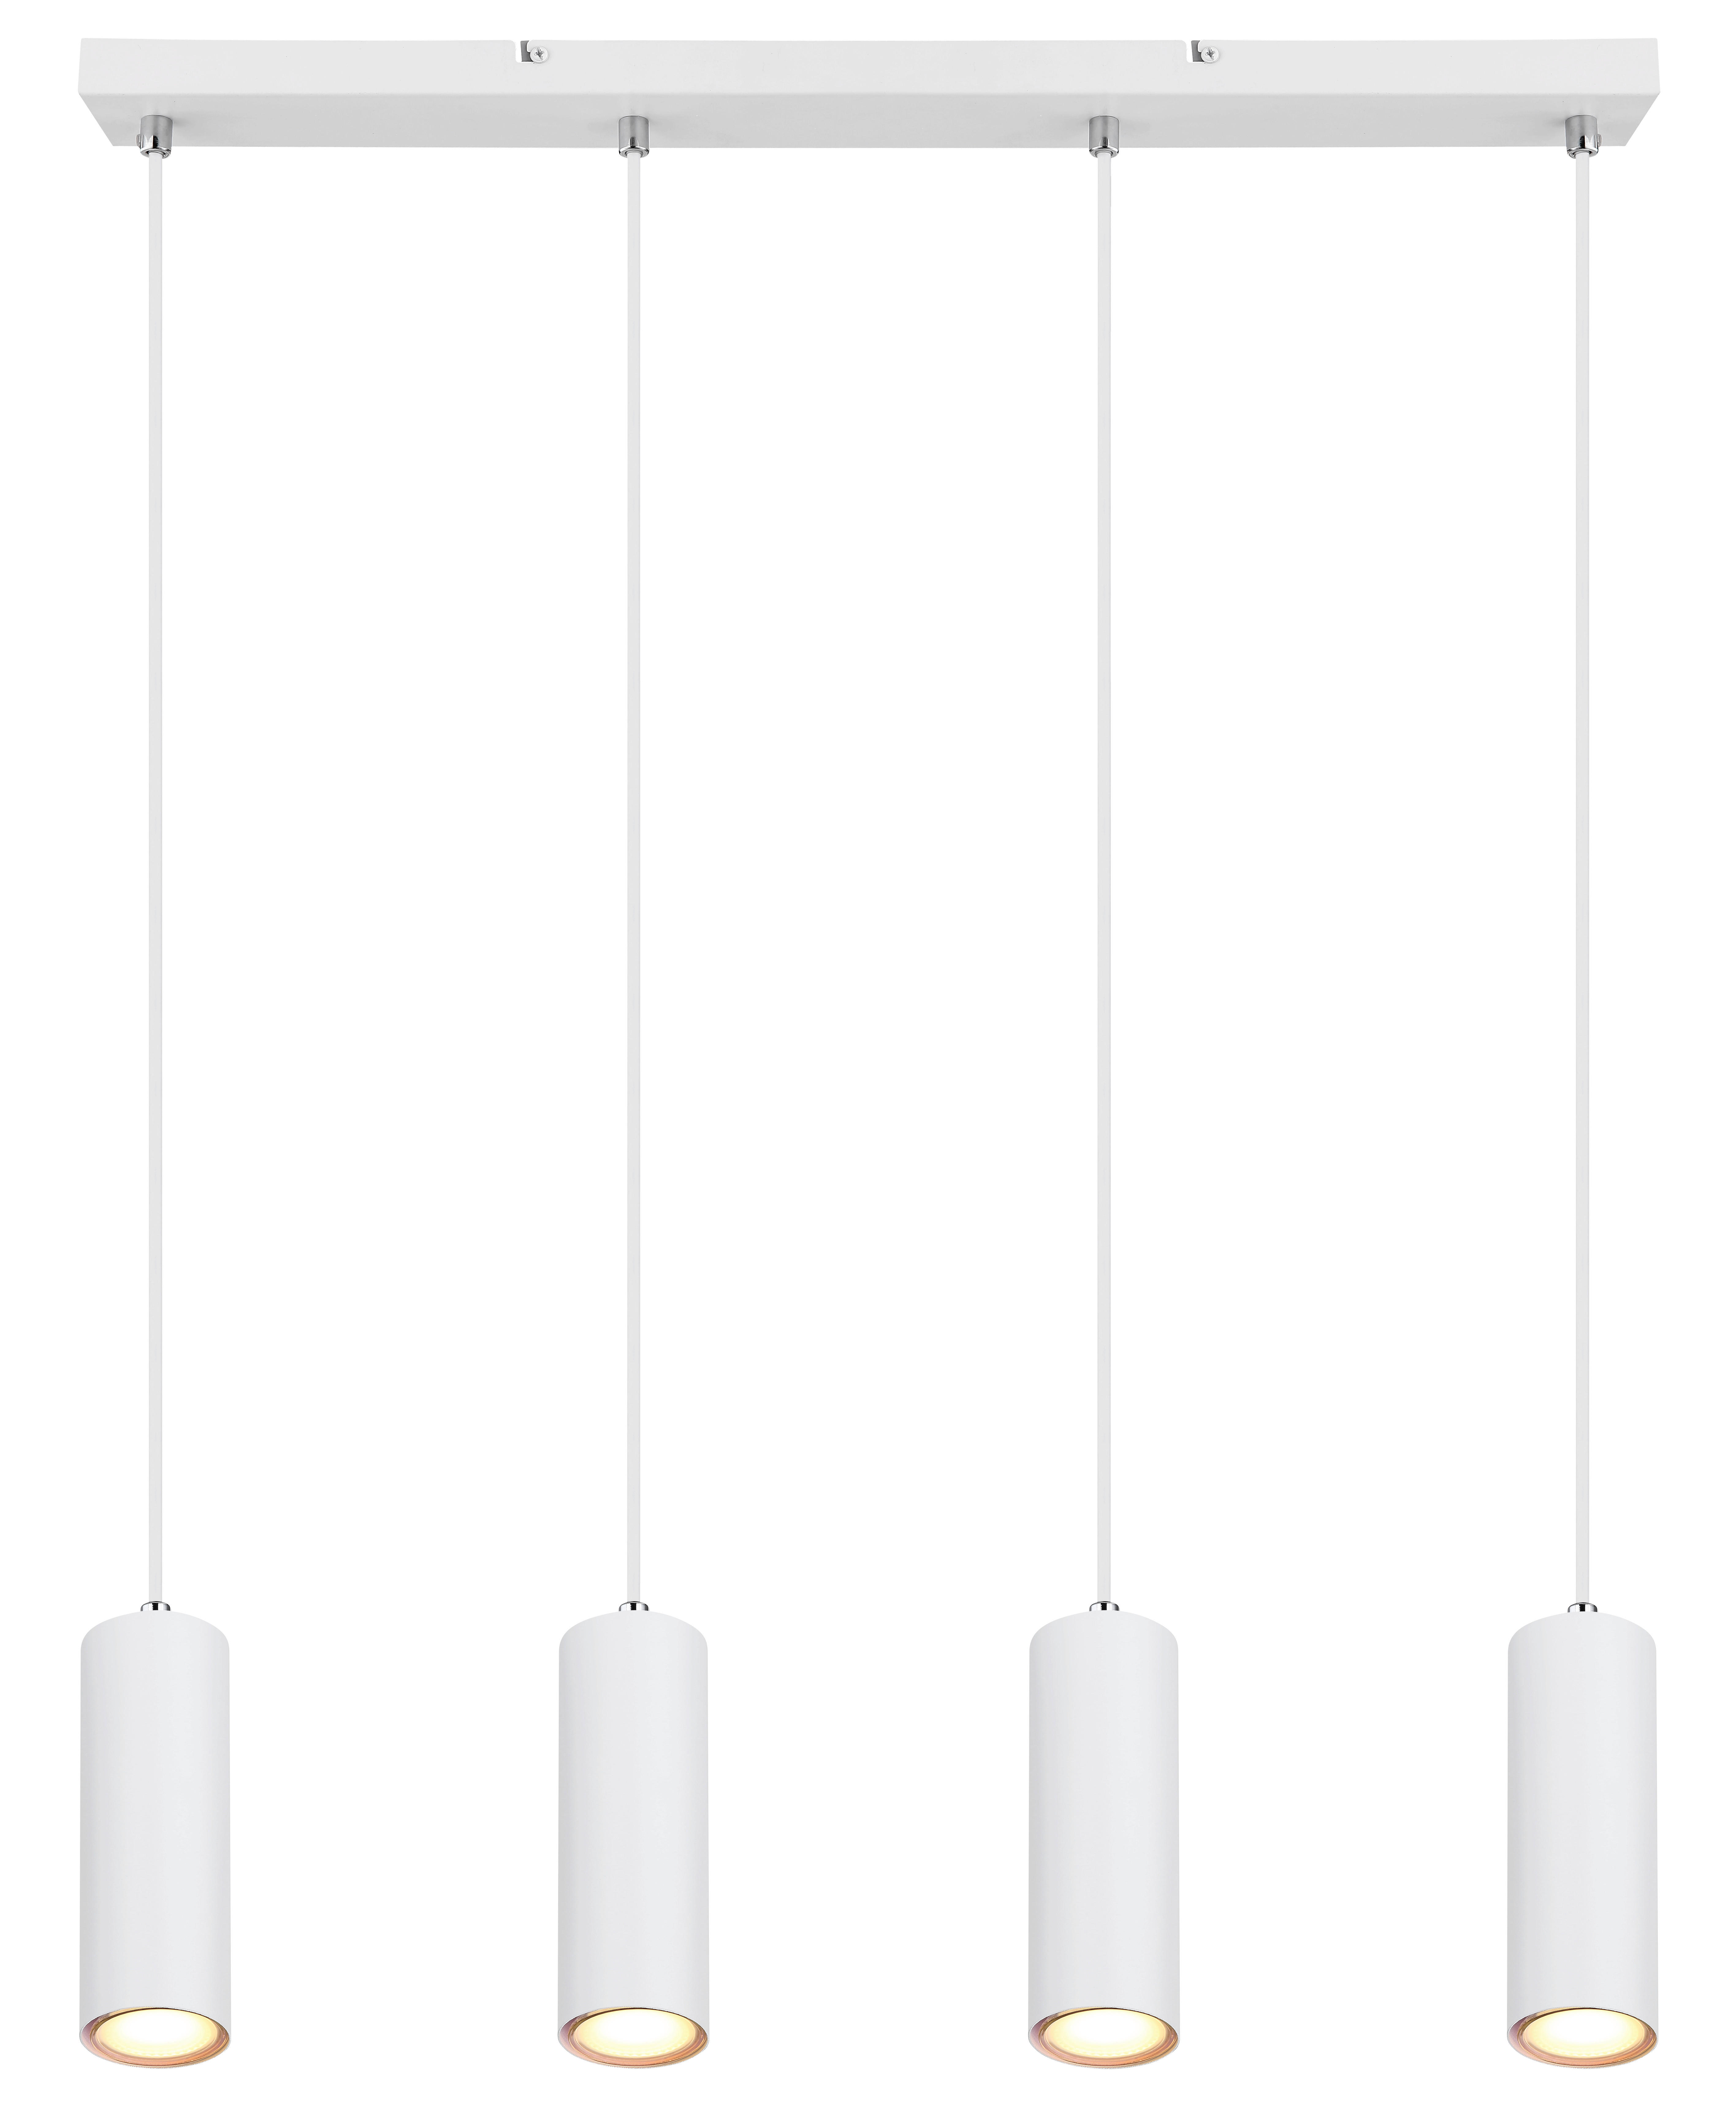 HÄNGELEUCHTE 65/6/120 cm   - Weiß, Design, Metall (65/6/120cm) - Globo